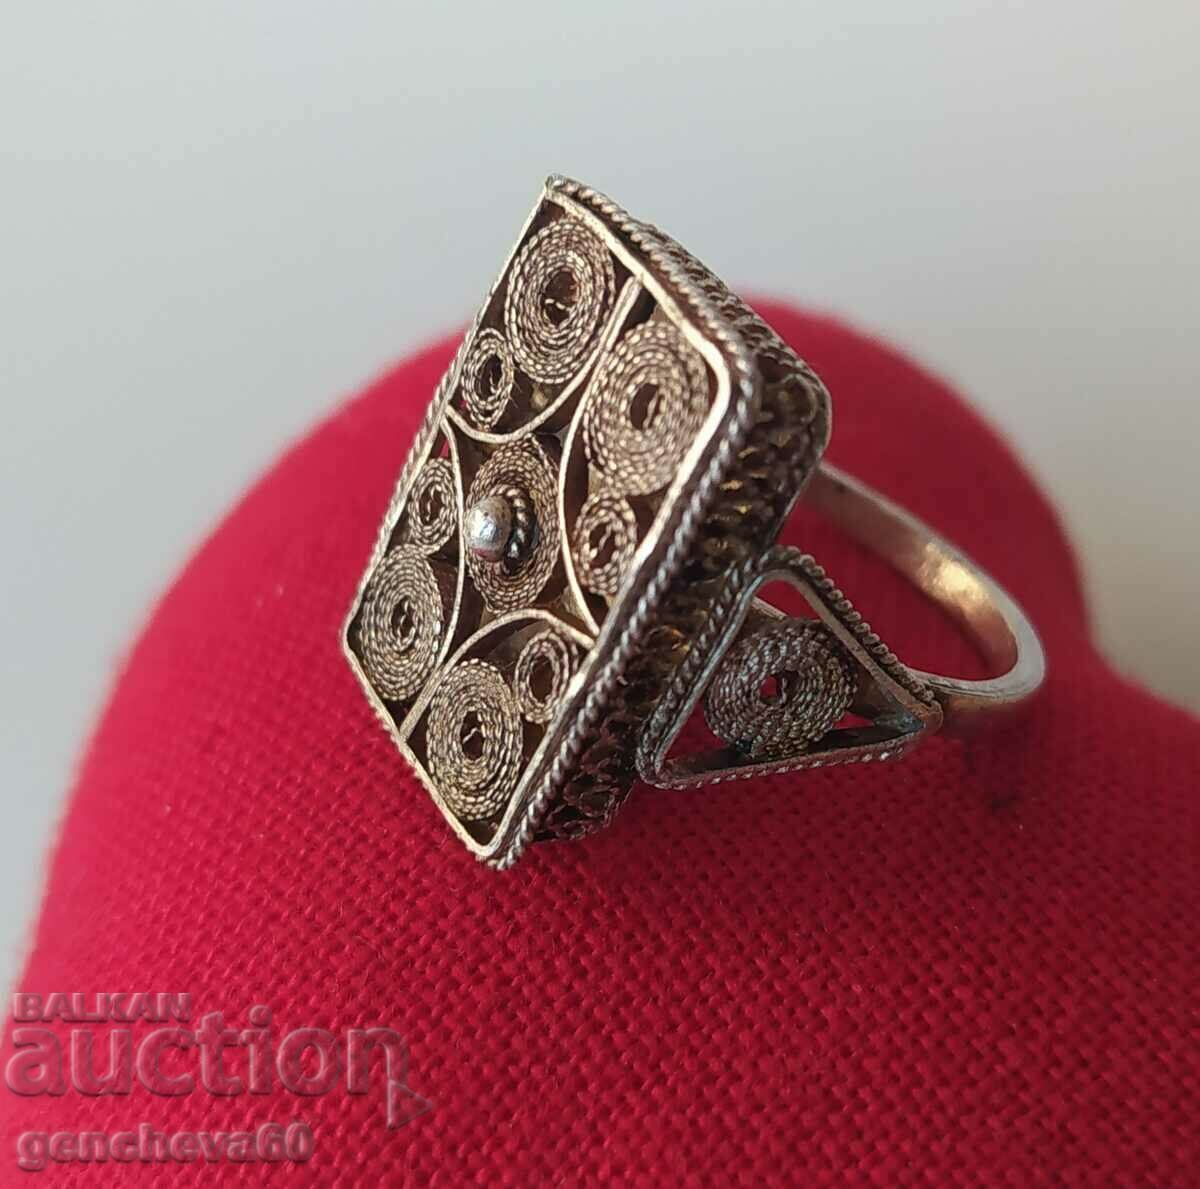 Bolyar silver ring filigree/Revival